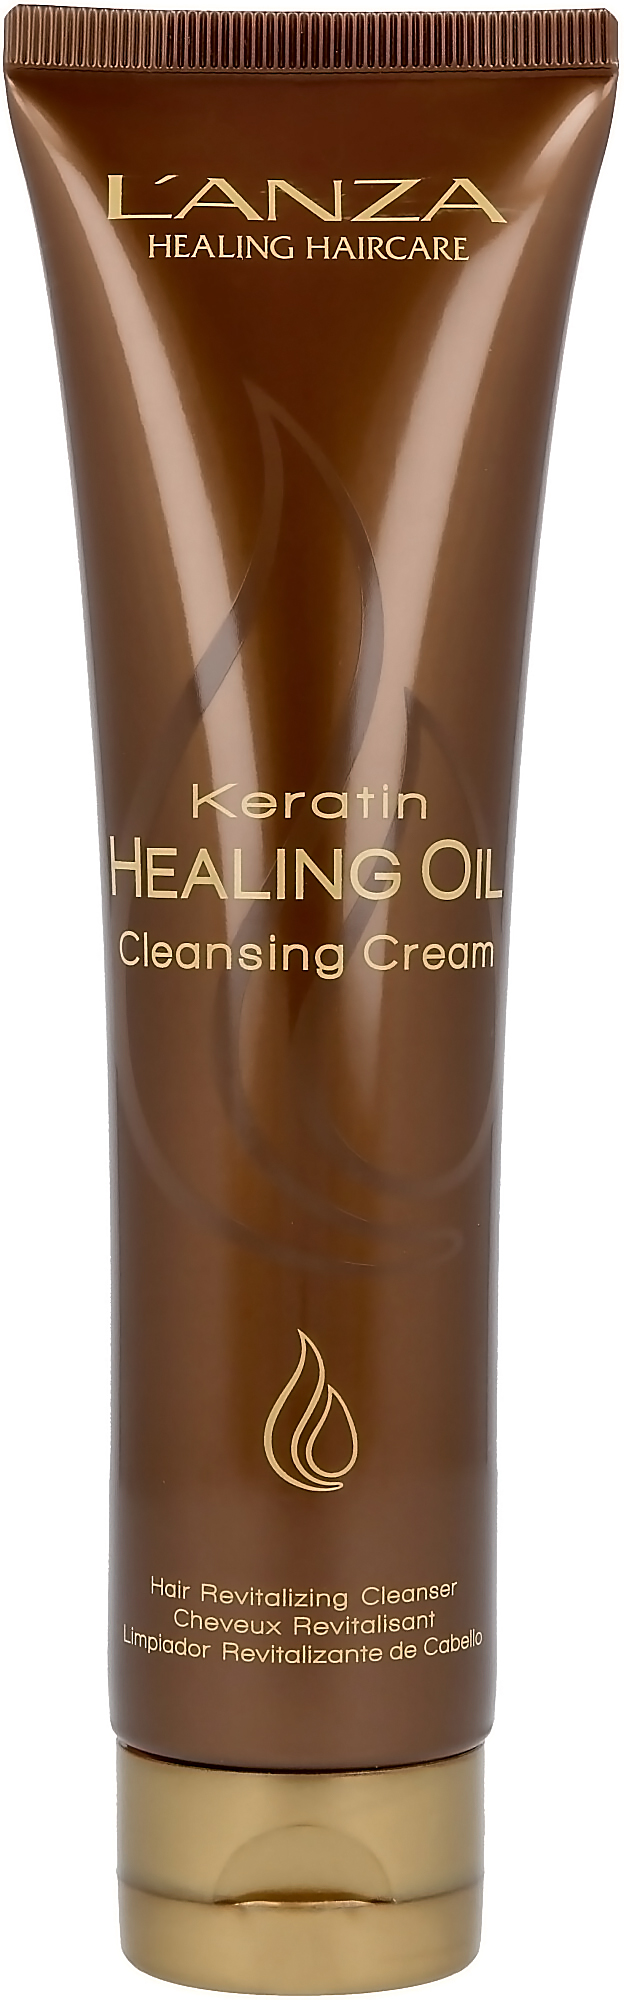 Lanza Keratin Healing Oil Cleansing Cream